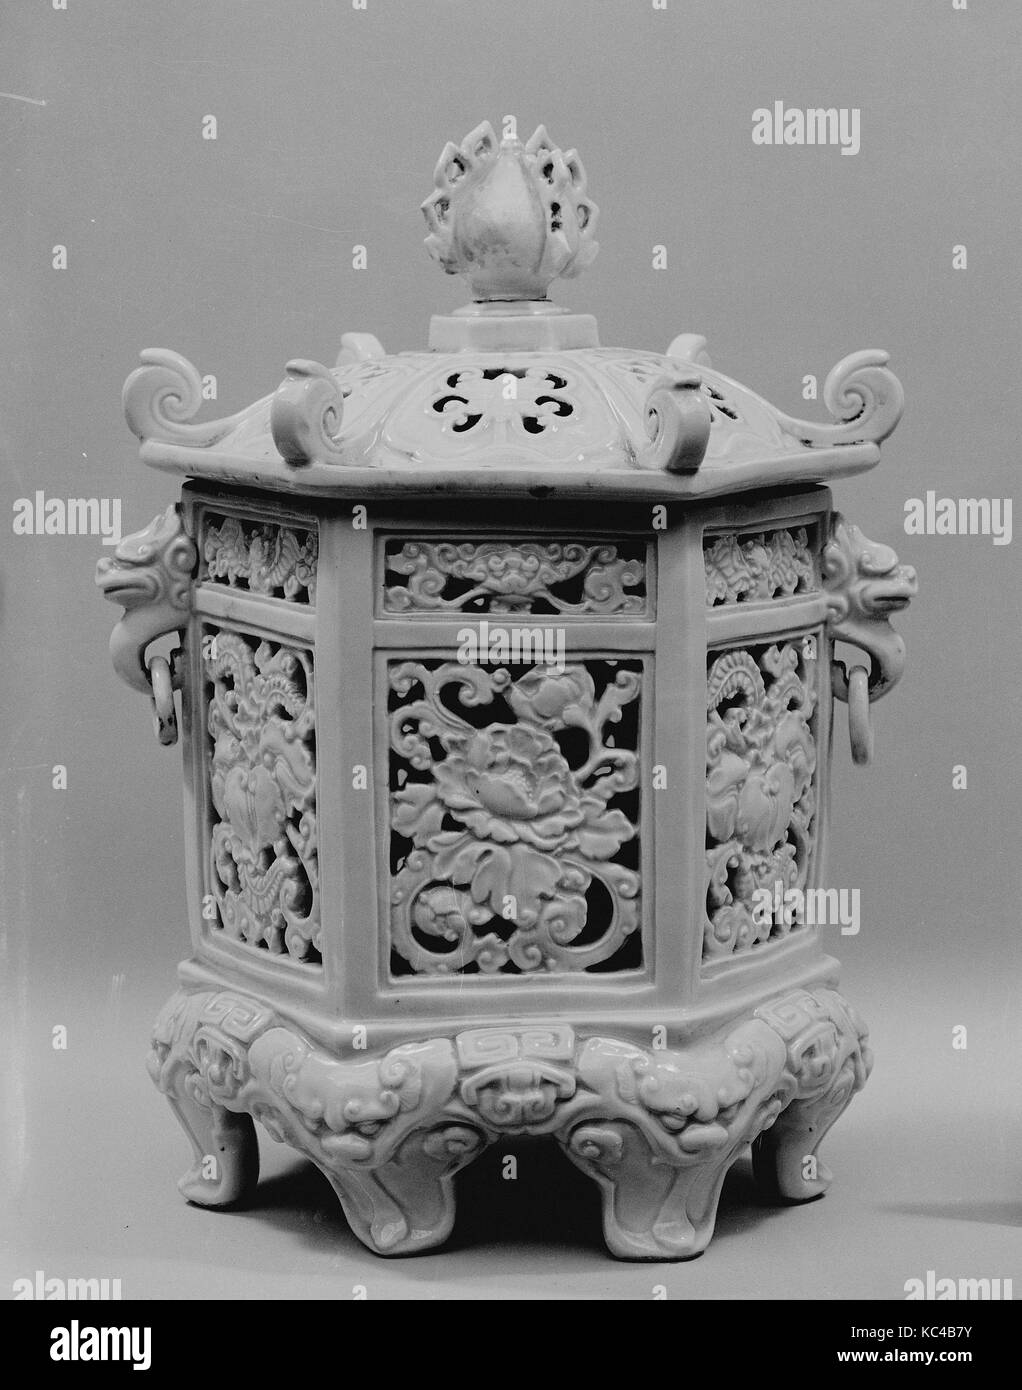 Brûleur d'encens en forme de lanterne suspendue (l'un d'un 白磁陽刻釣り灯籠形香炉 一対), paire, de la période Edo (1615-1868), 18e siècle, le Japon Banque D'Images